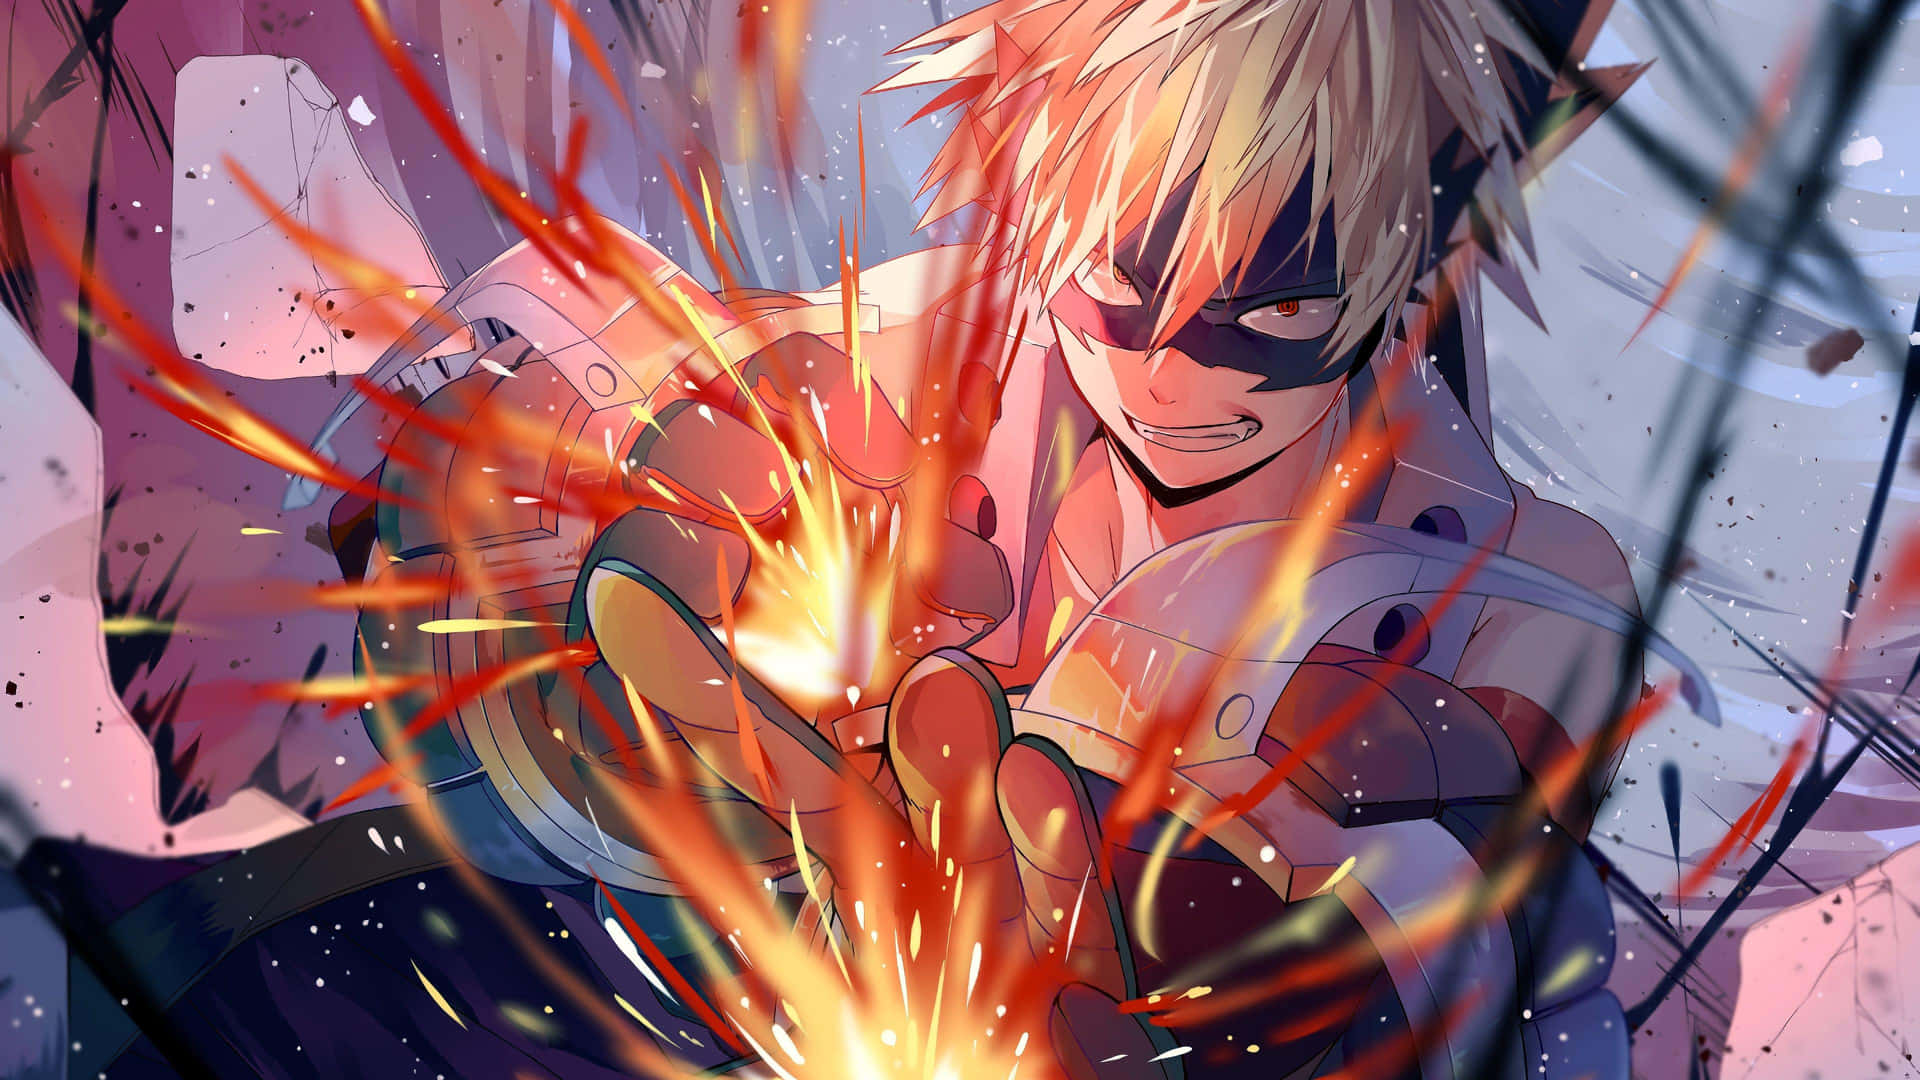 Caption: "explosive Power - Bakugo From My Hero Academia"